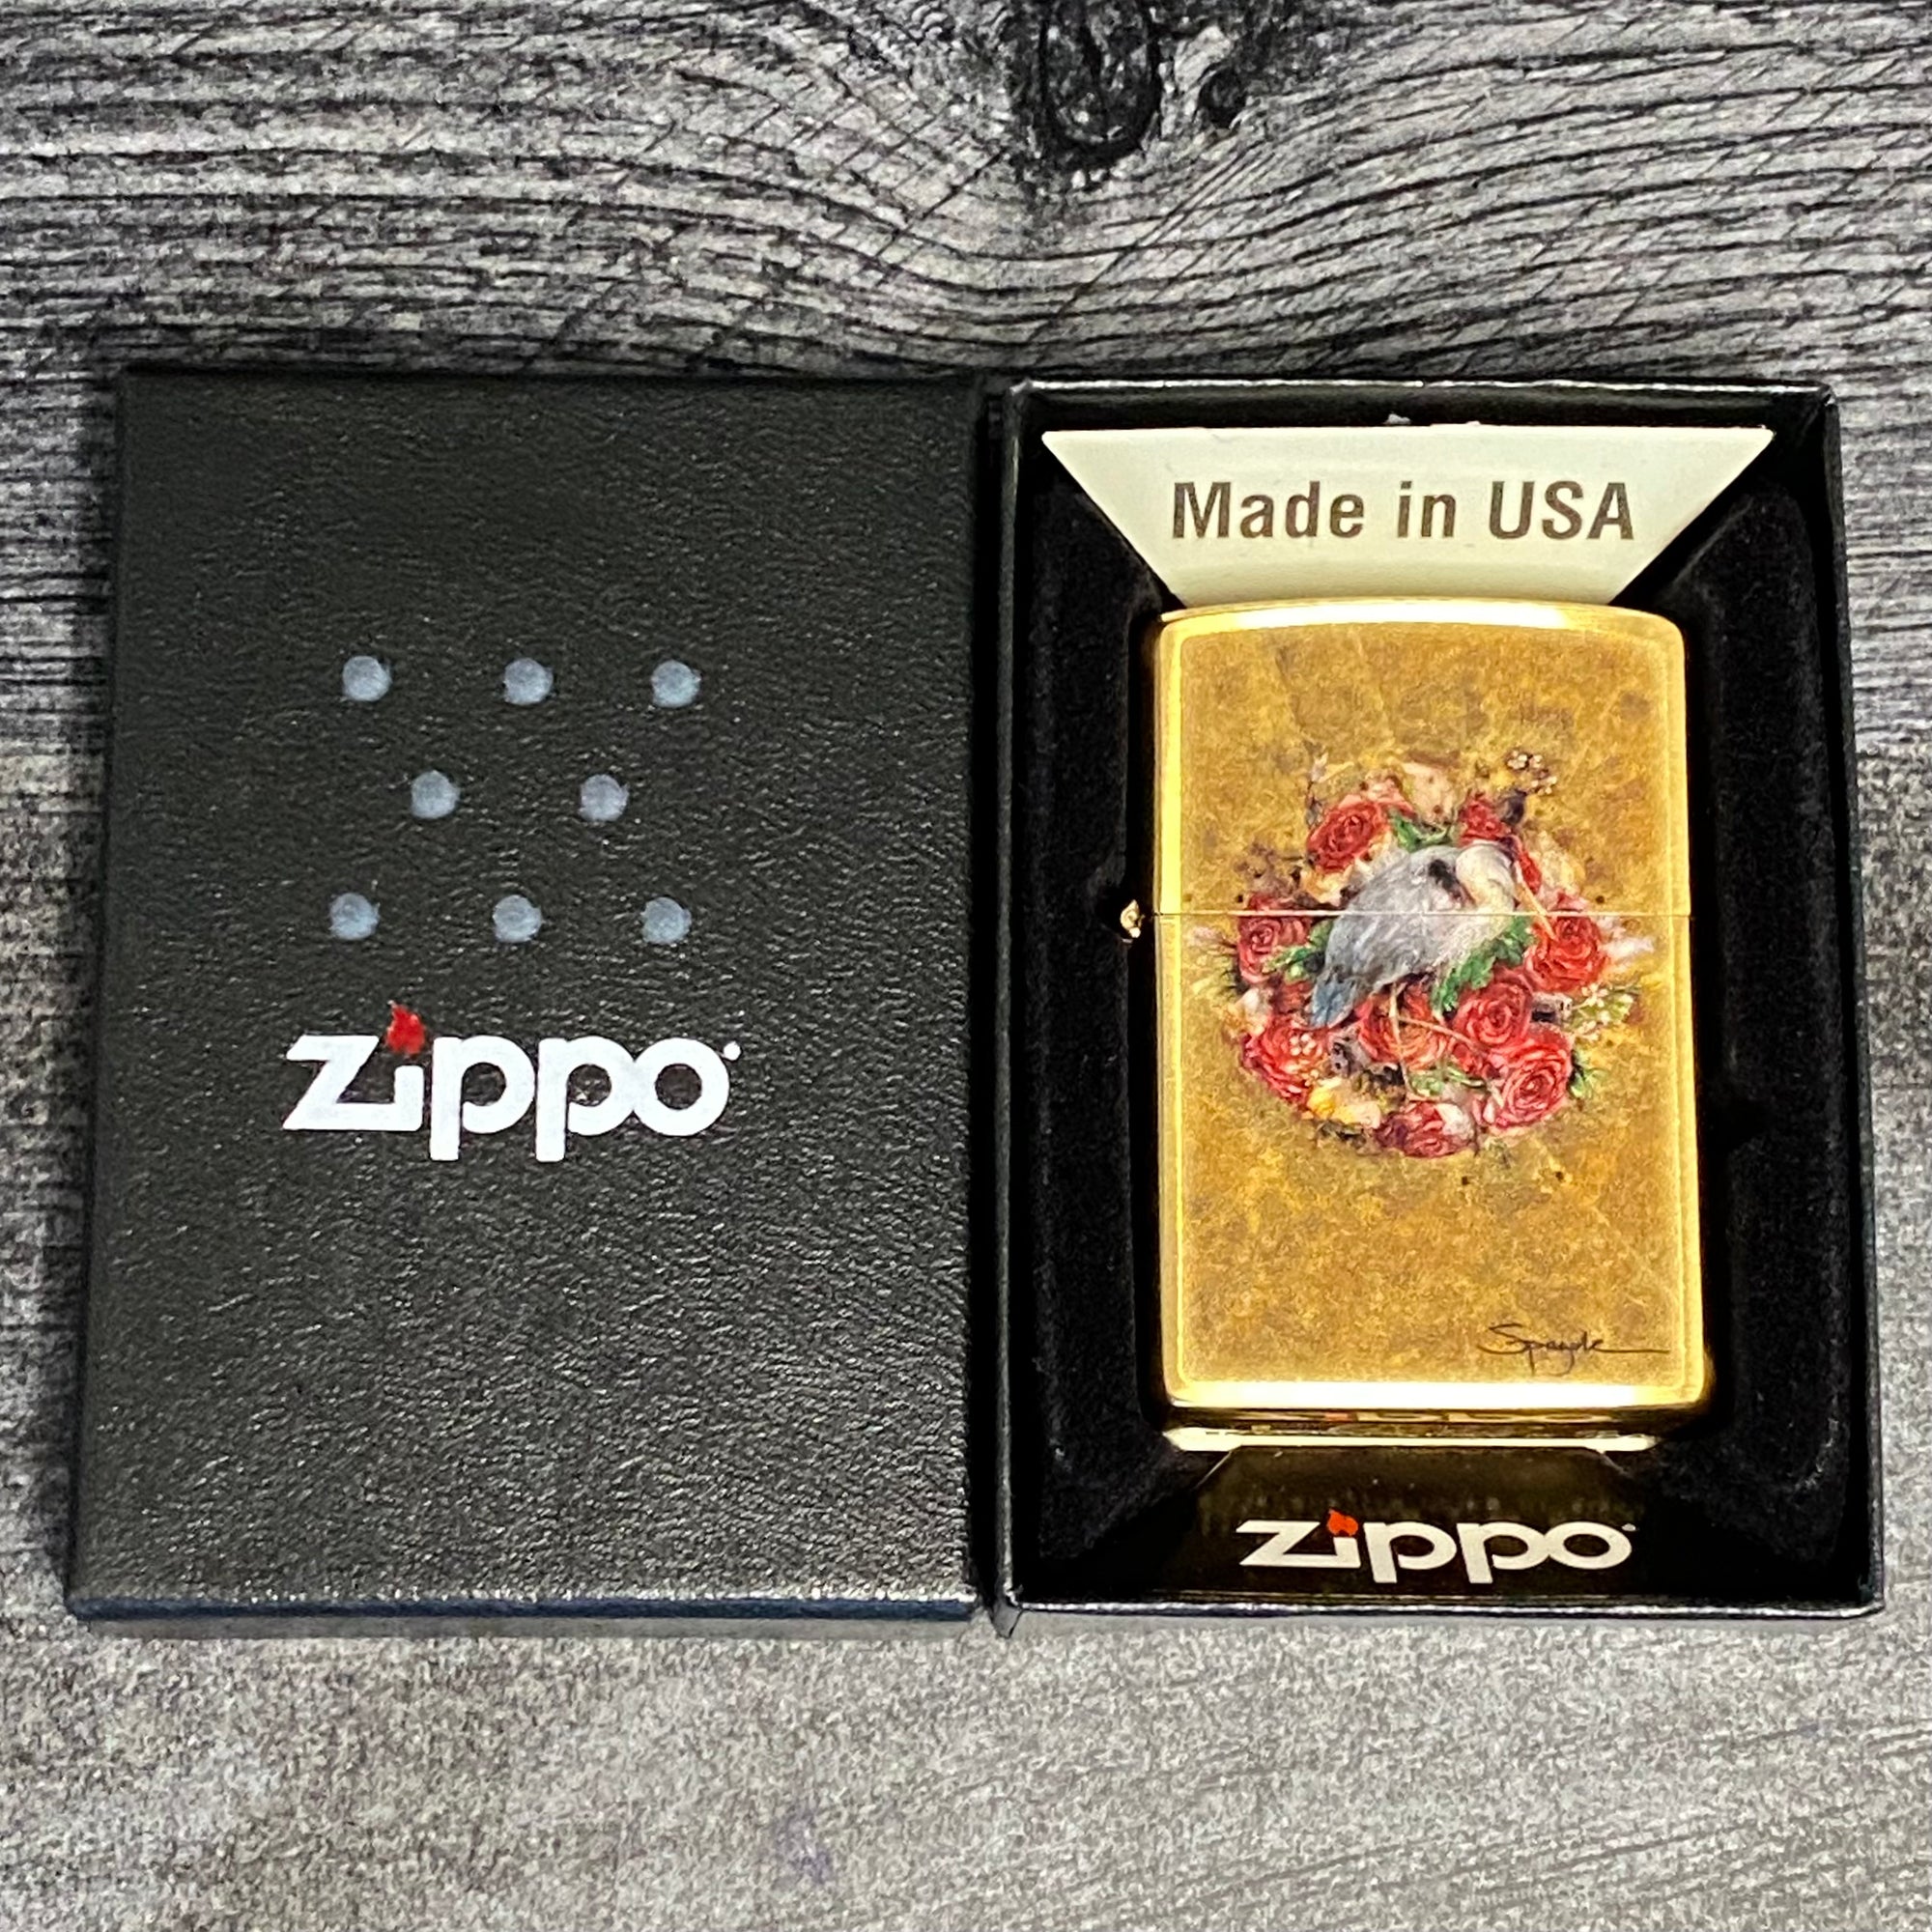 Zippo Lighter - Spazuk - Brushed Brass